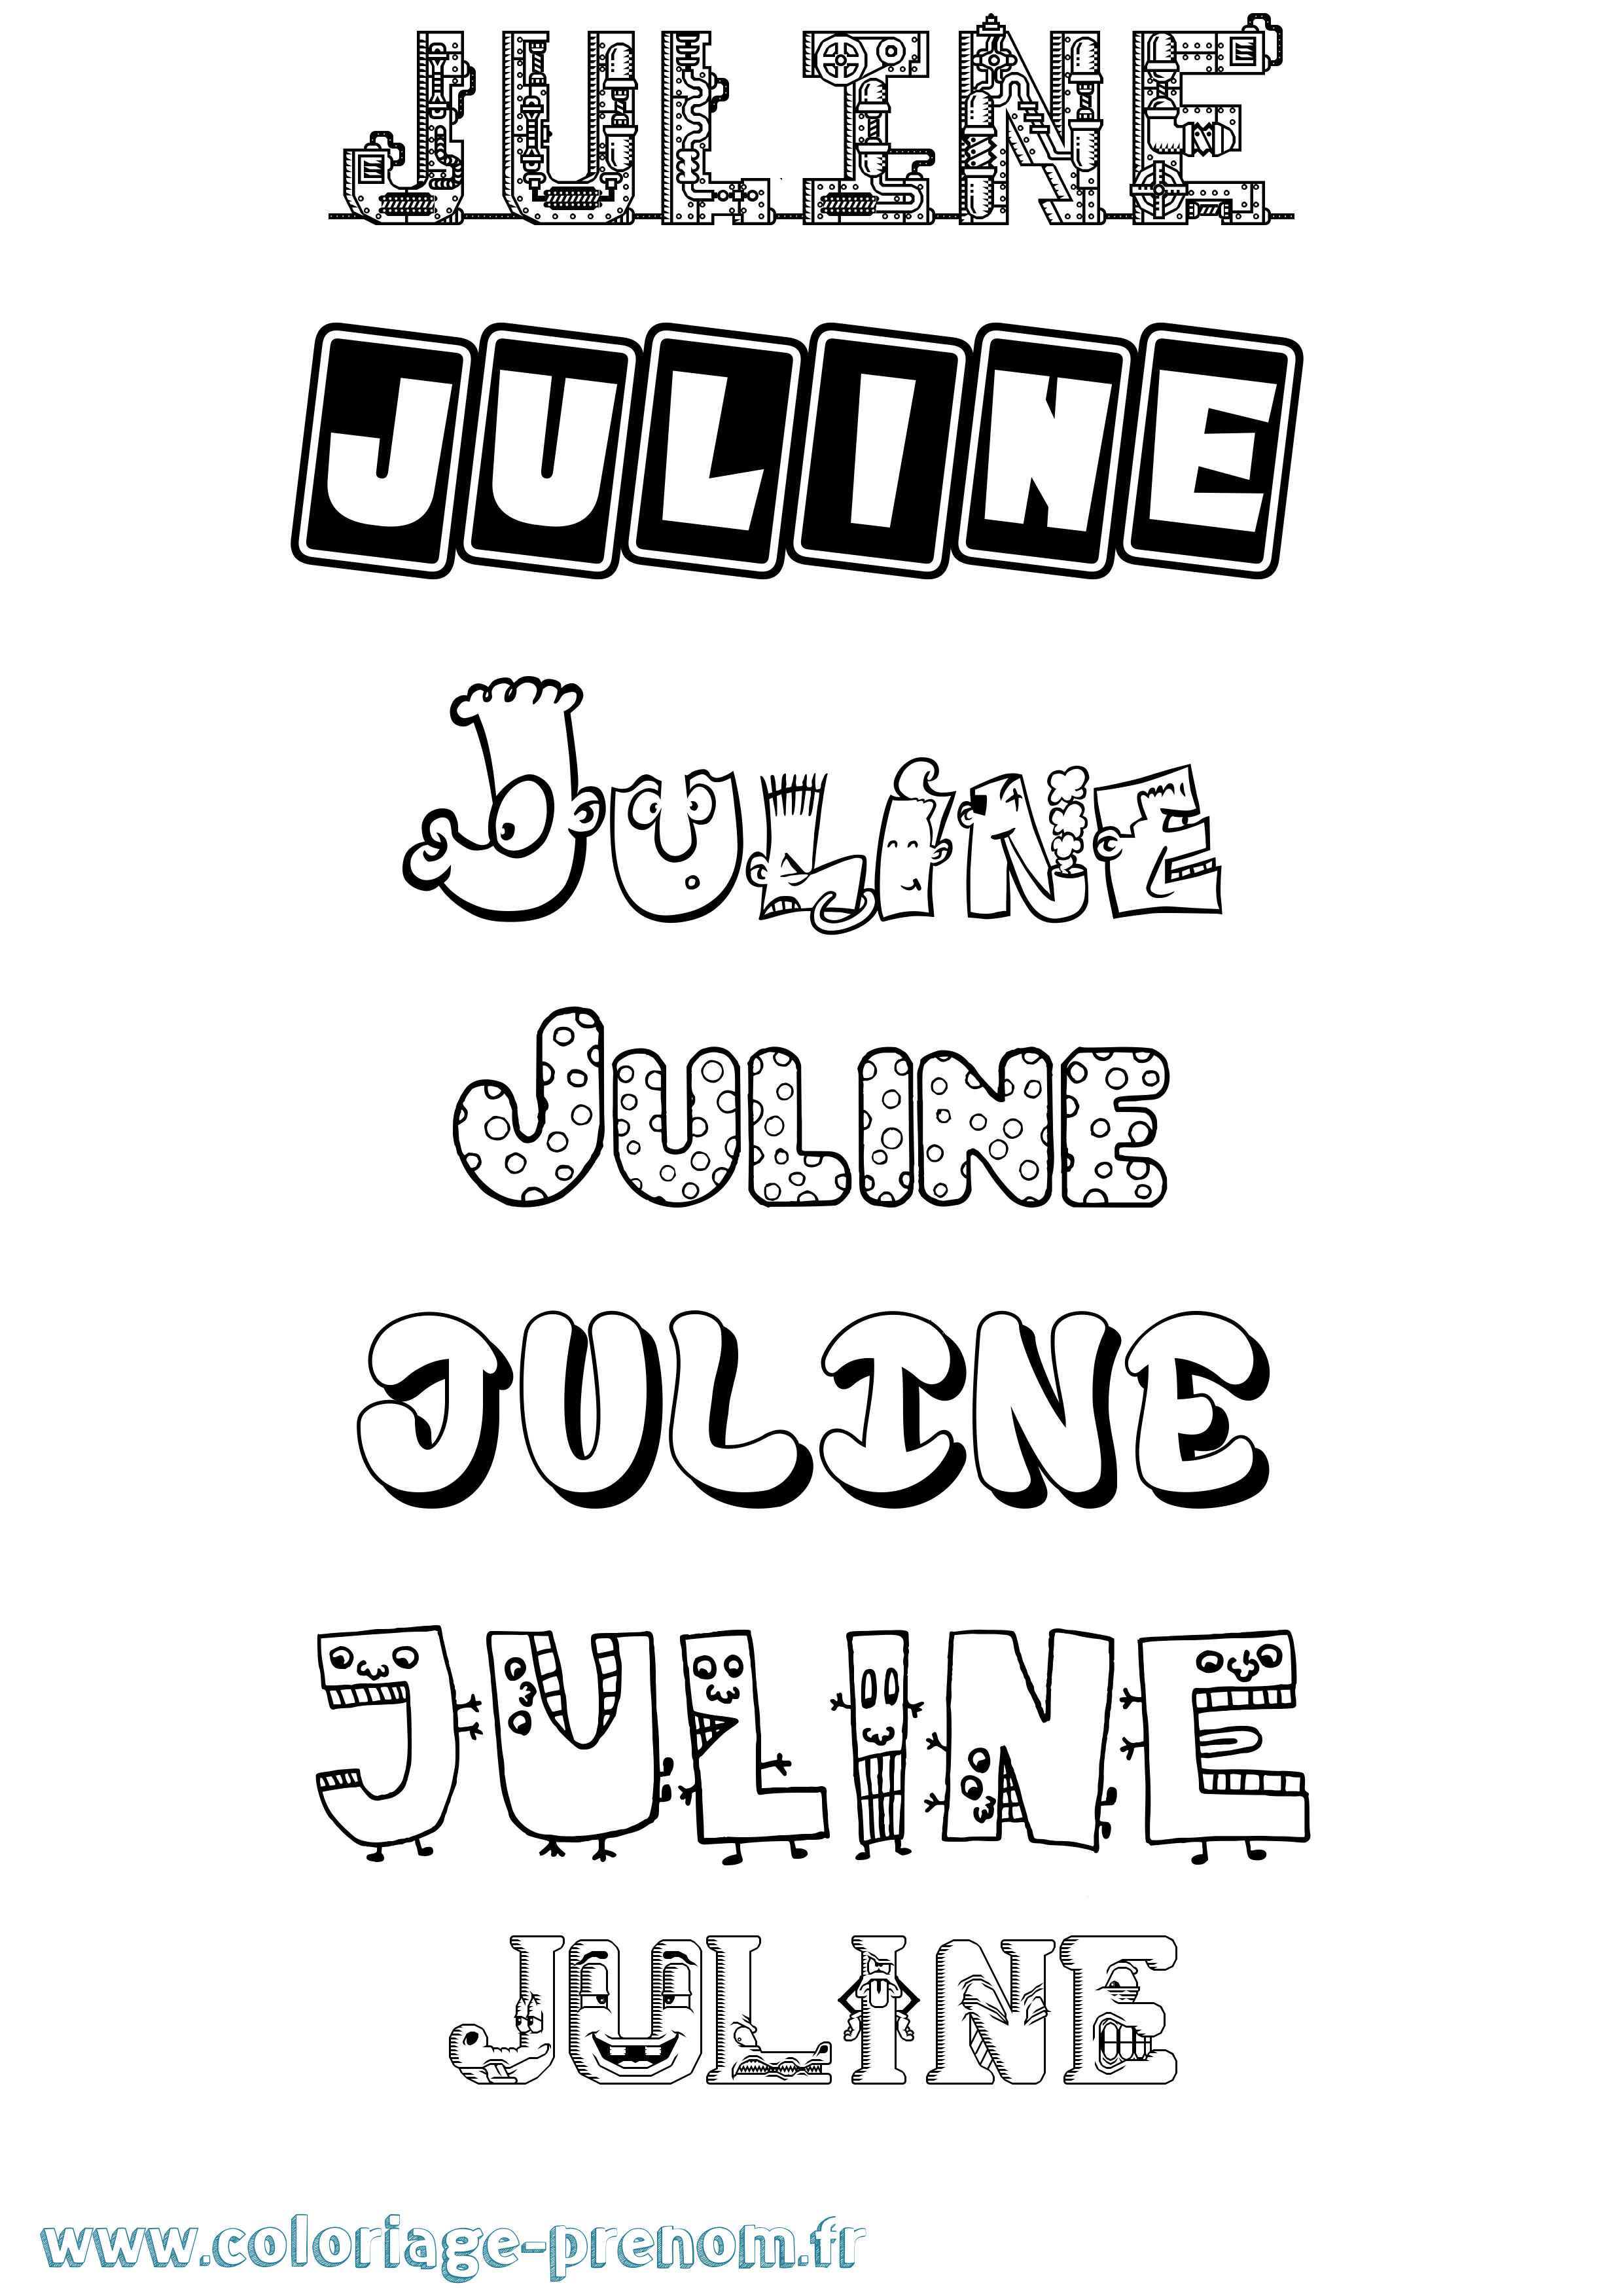 Coloriage prénom Juline Fun